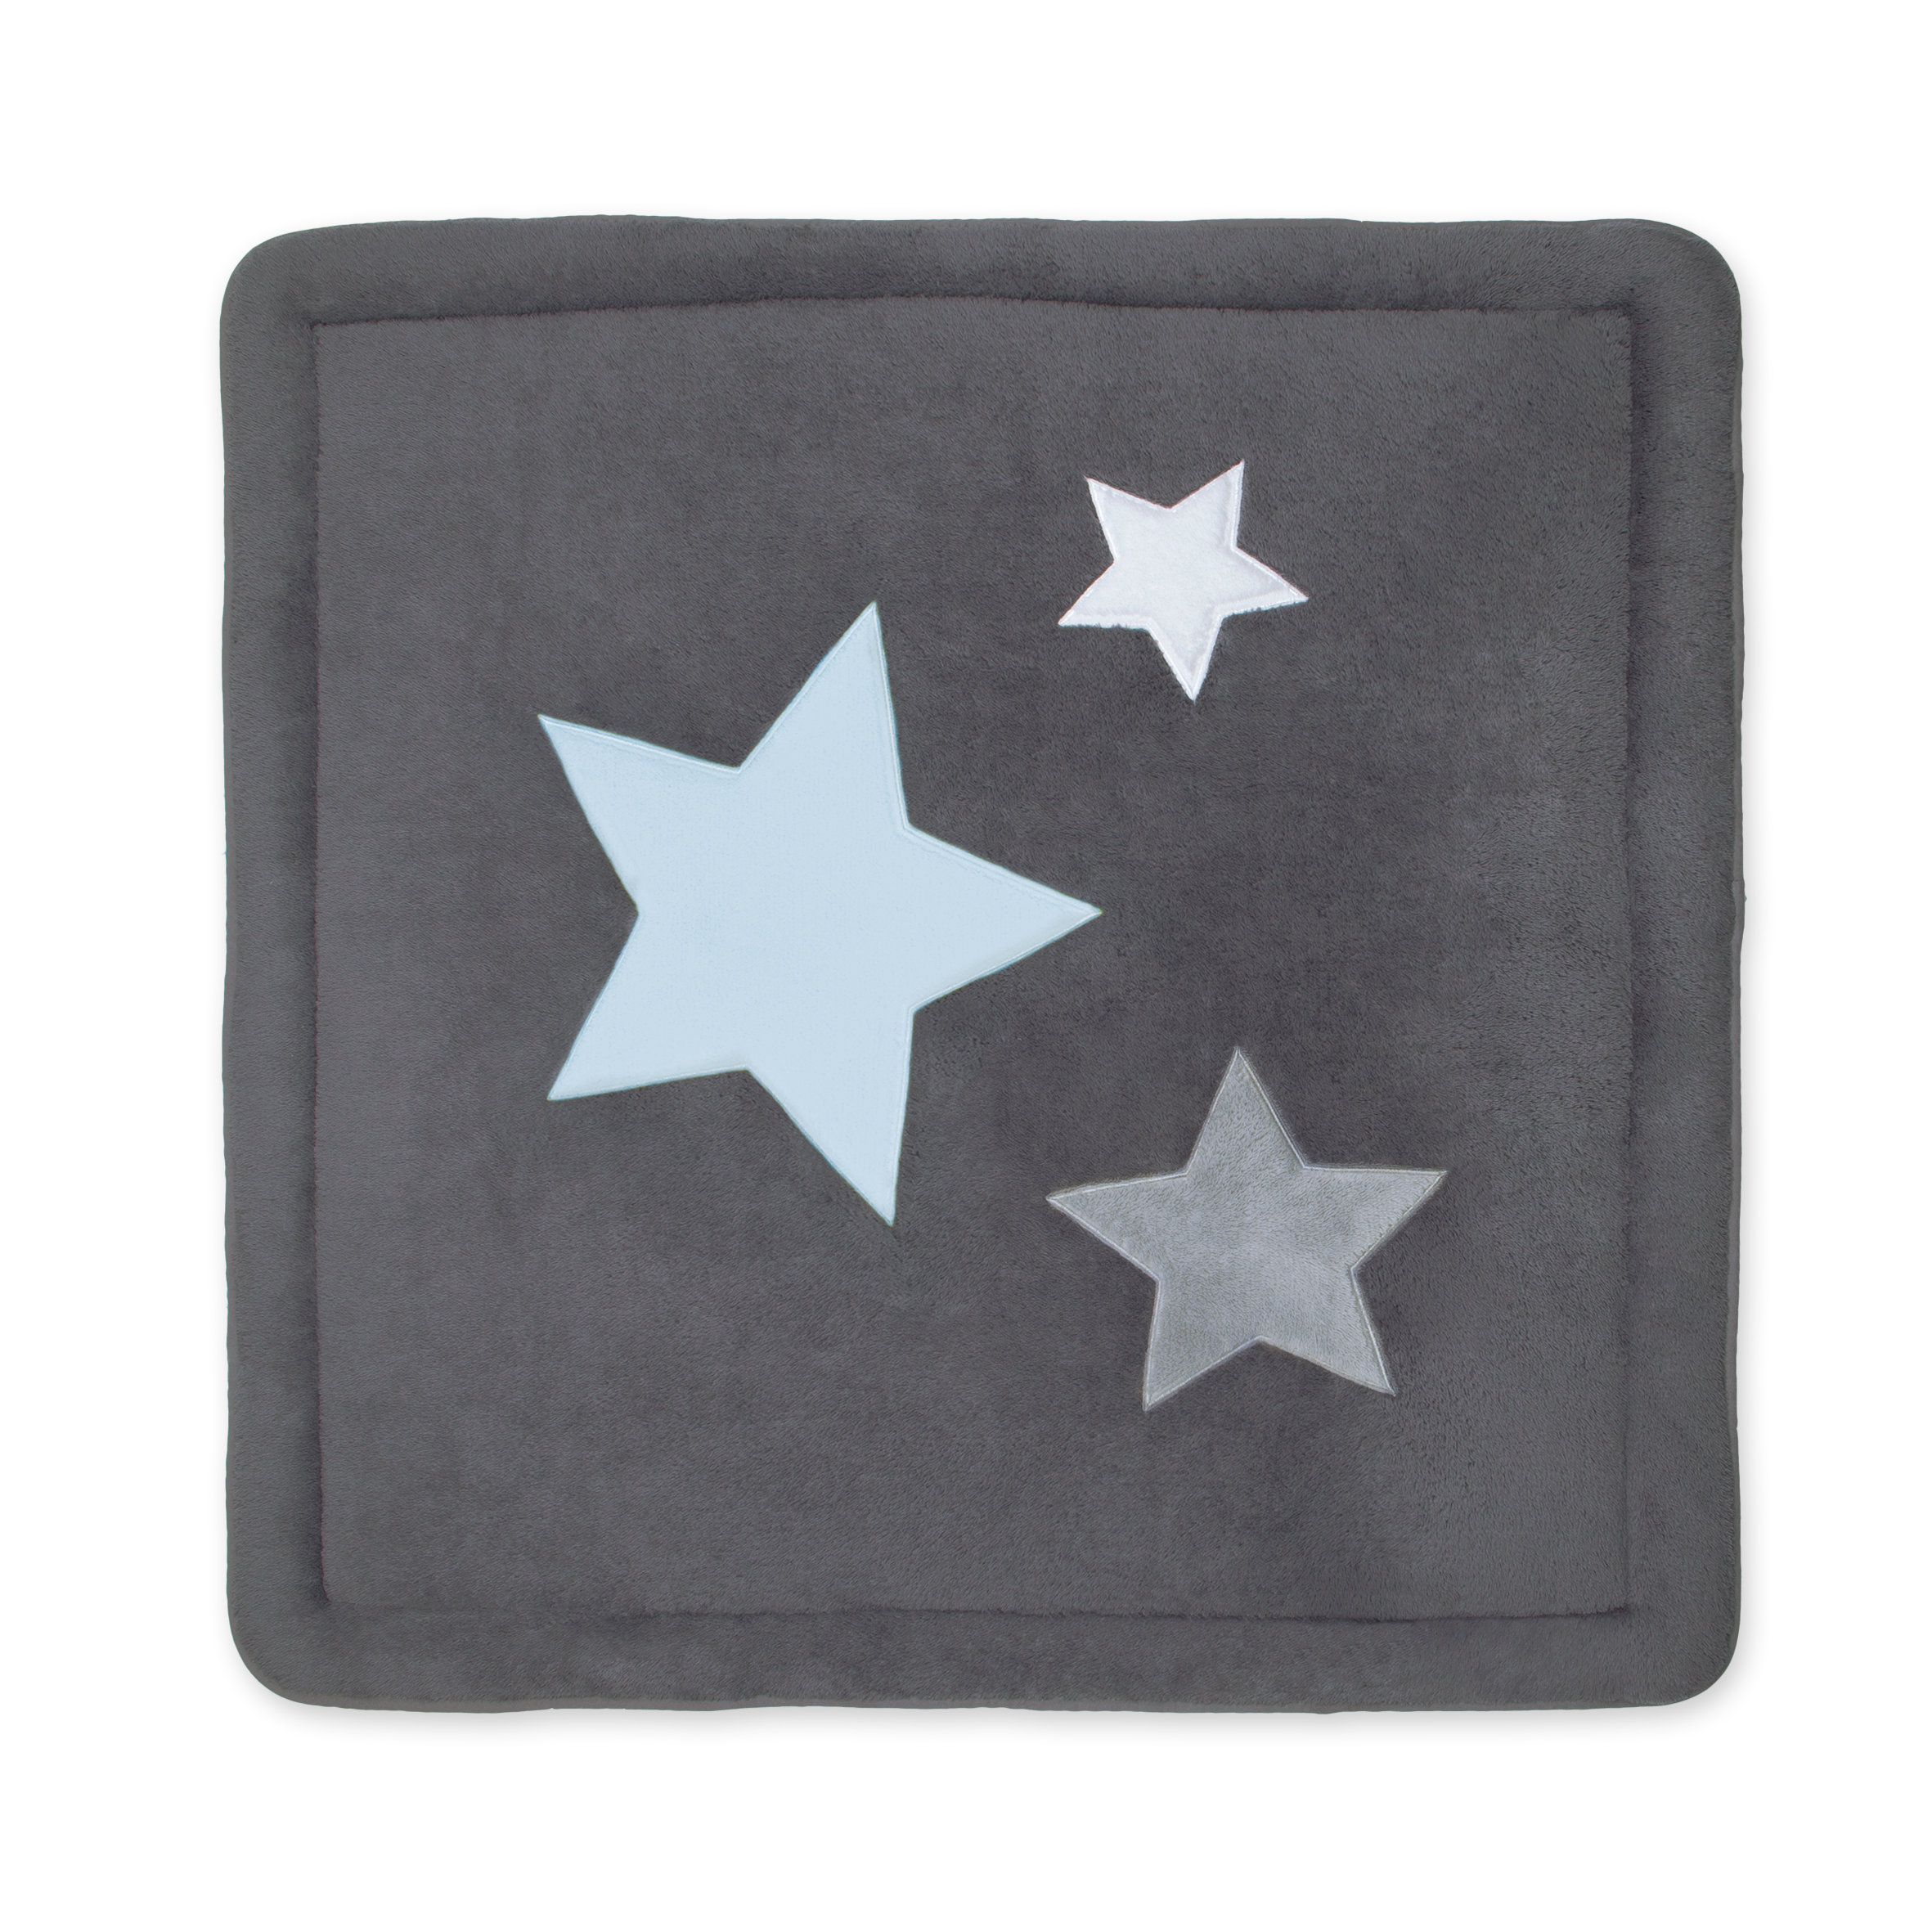 Laufstalleinlage Krabbeldecke Pady softy + terry 100x100cm STARB Grau kleine Sterne